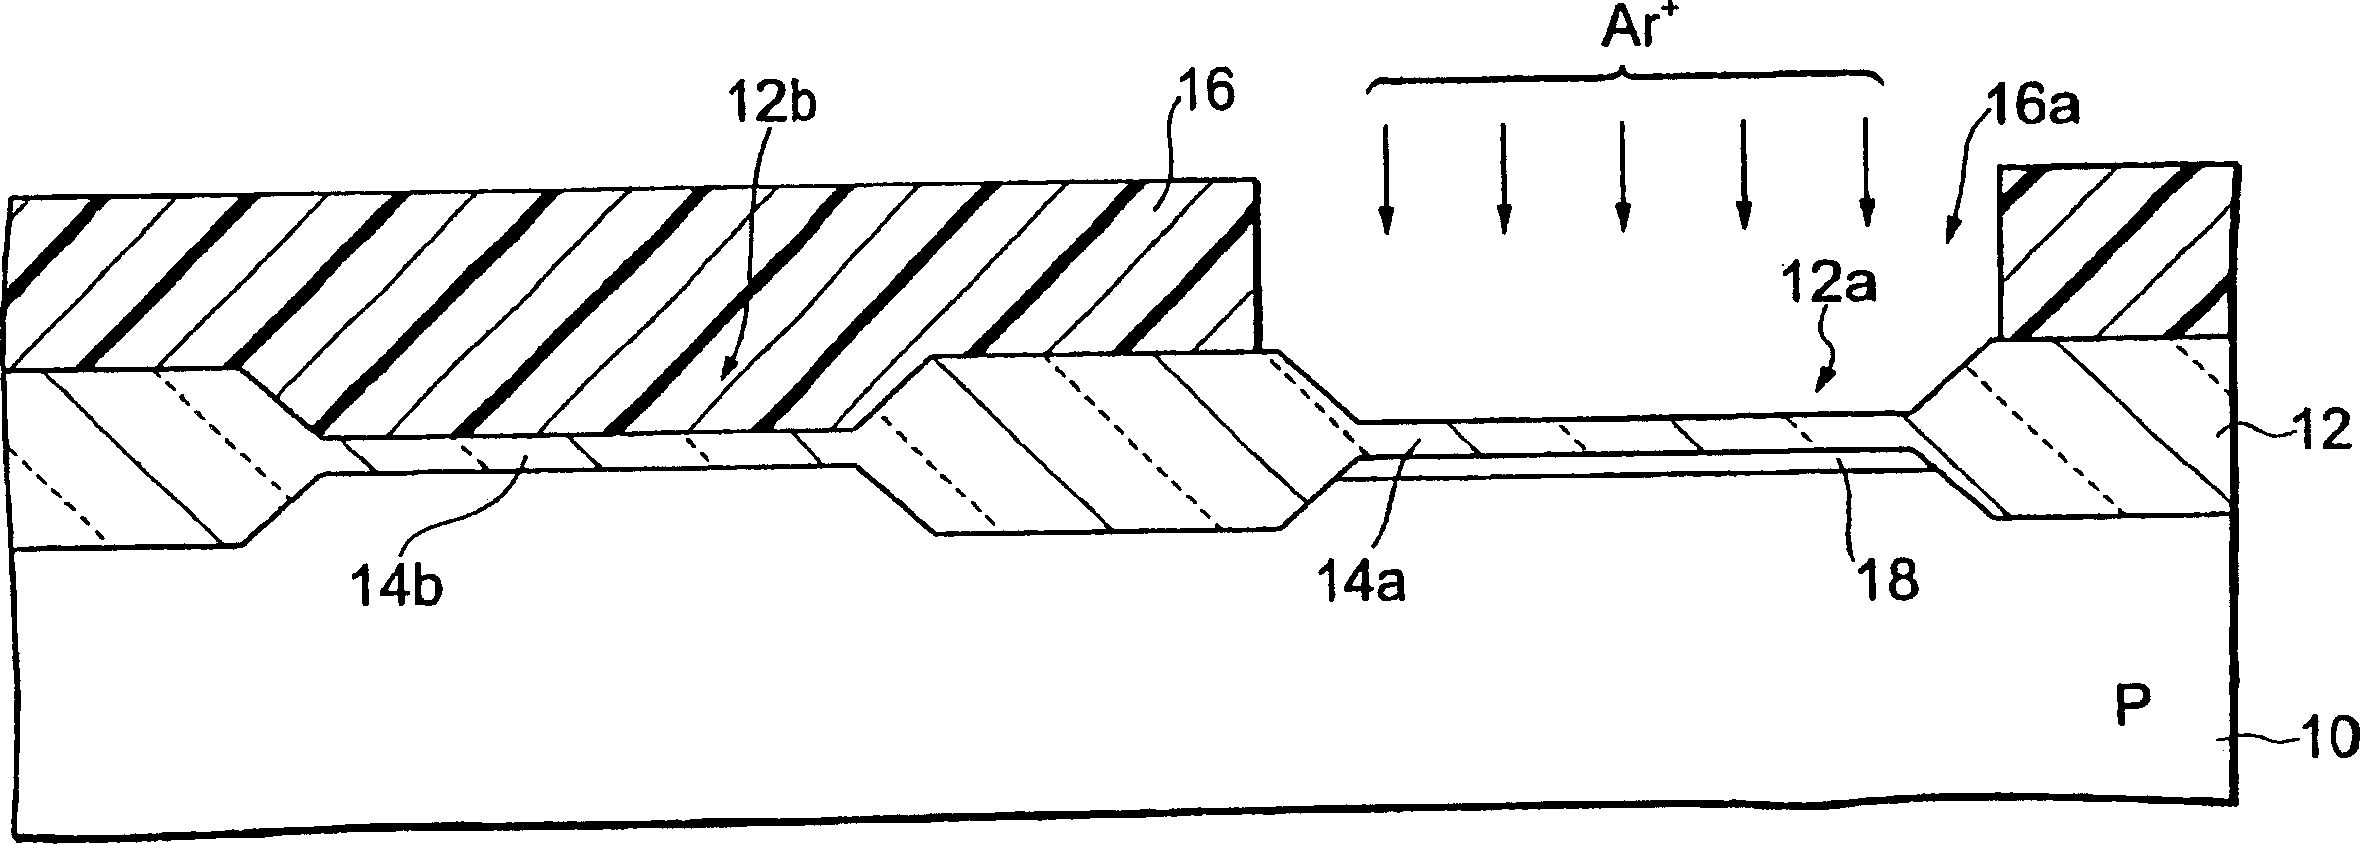 Manufacturing method of grating oxide film